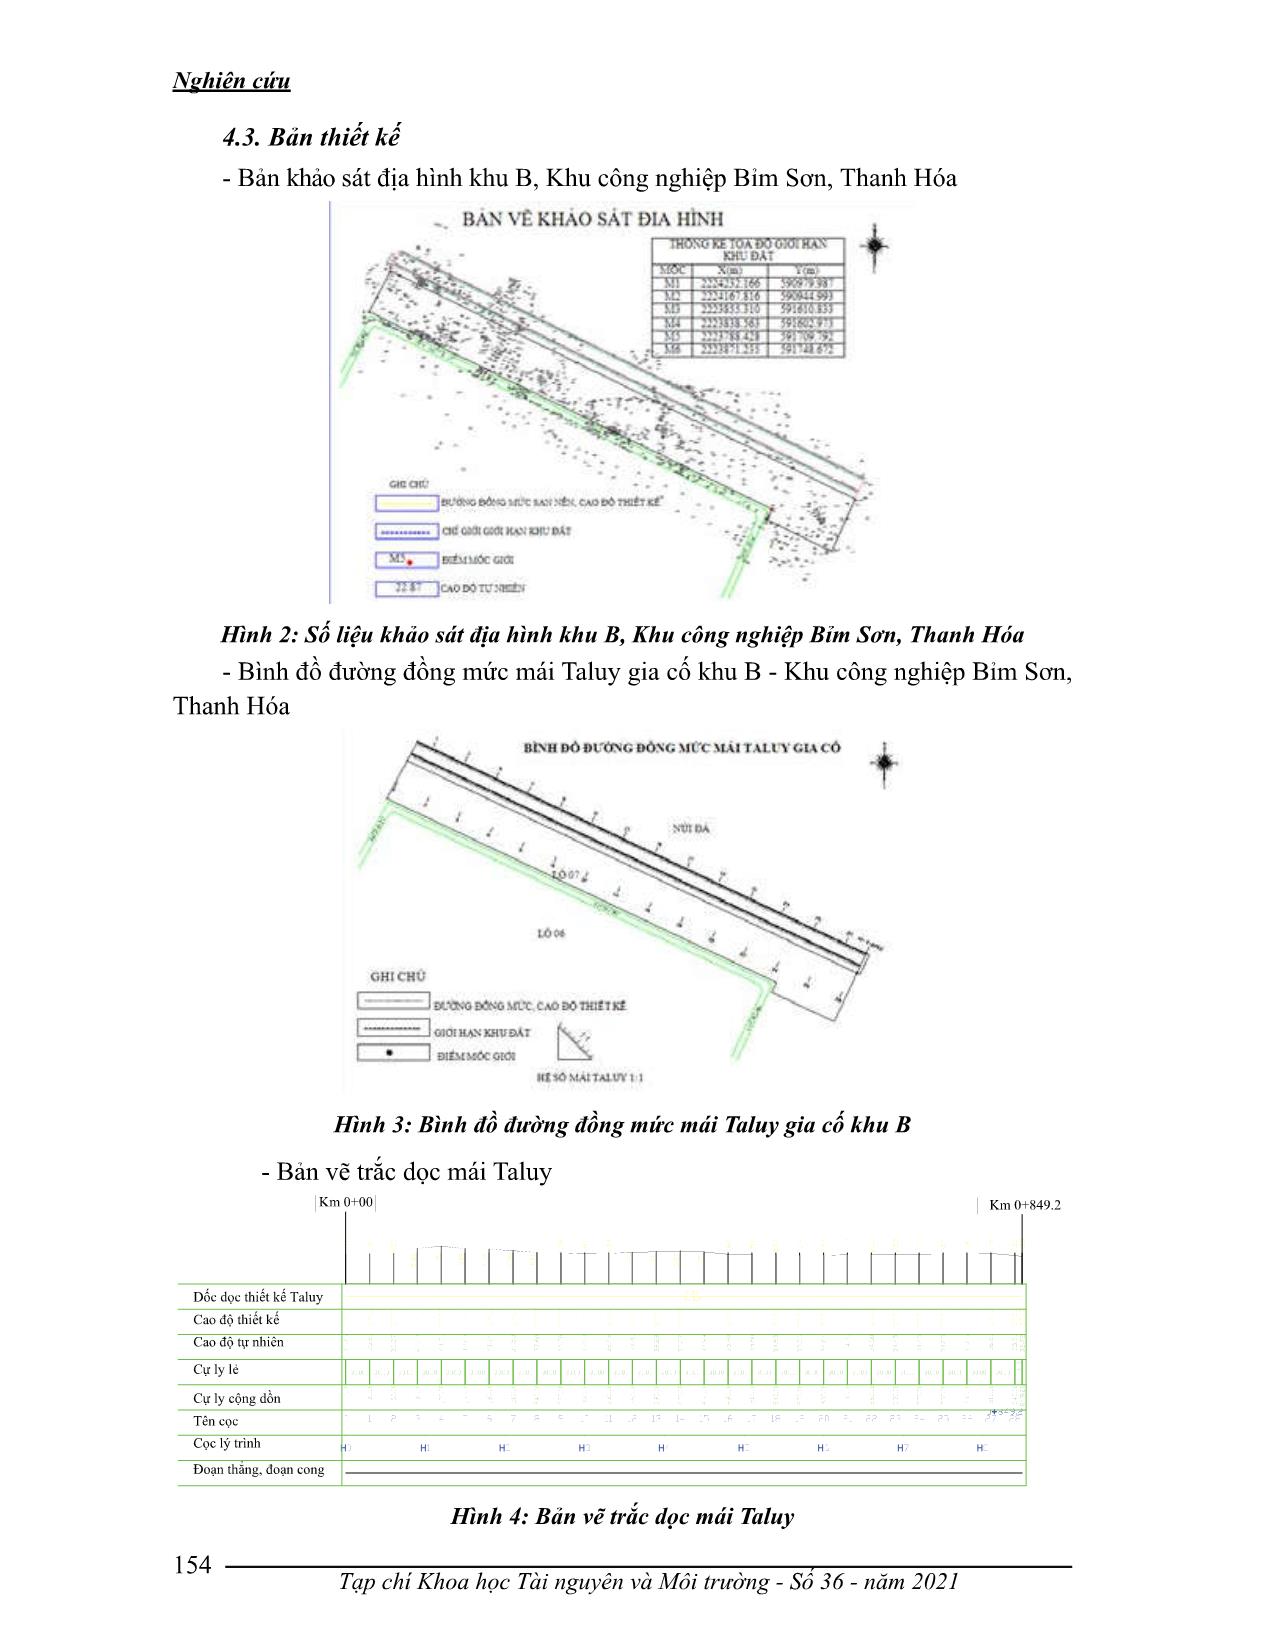 Xây dựng quy trình thiết kế, tính toán khói lượng đào đắp mái taluy gia cố tại khu B, khu công nghiệp Bỉm Sơn, Thanh Hóa trang 7